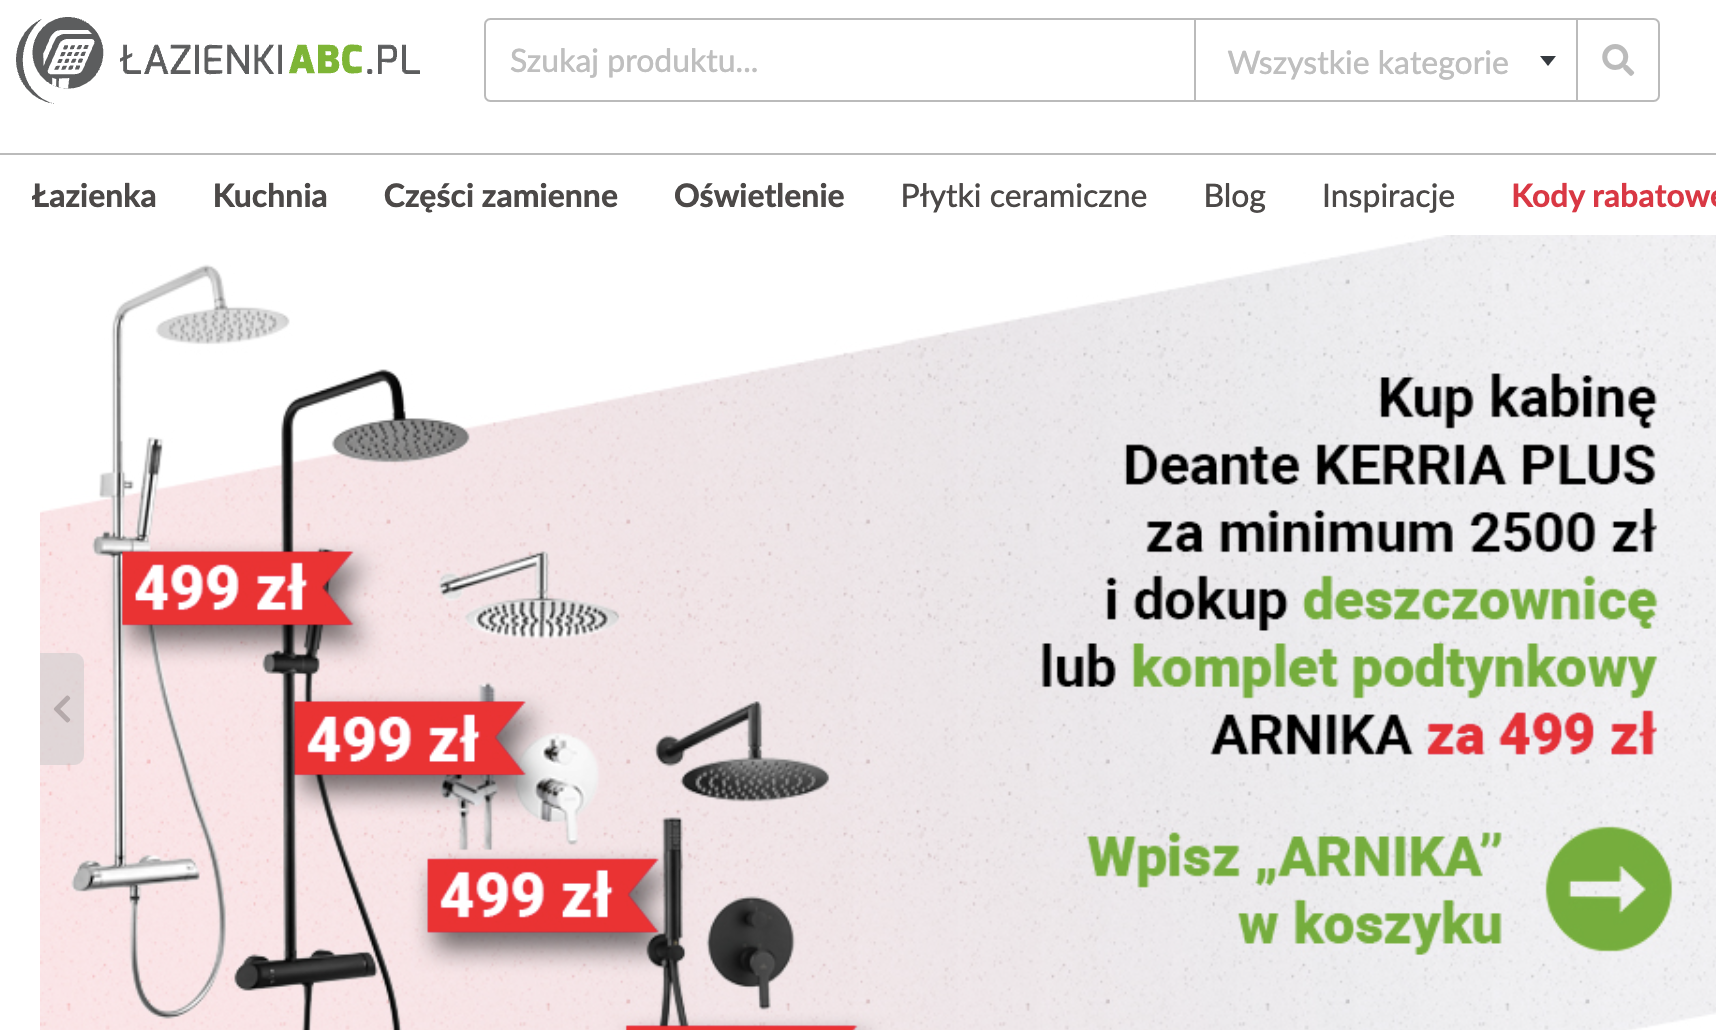 lazienkiabc.pl: widok sklepu internetowego